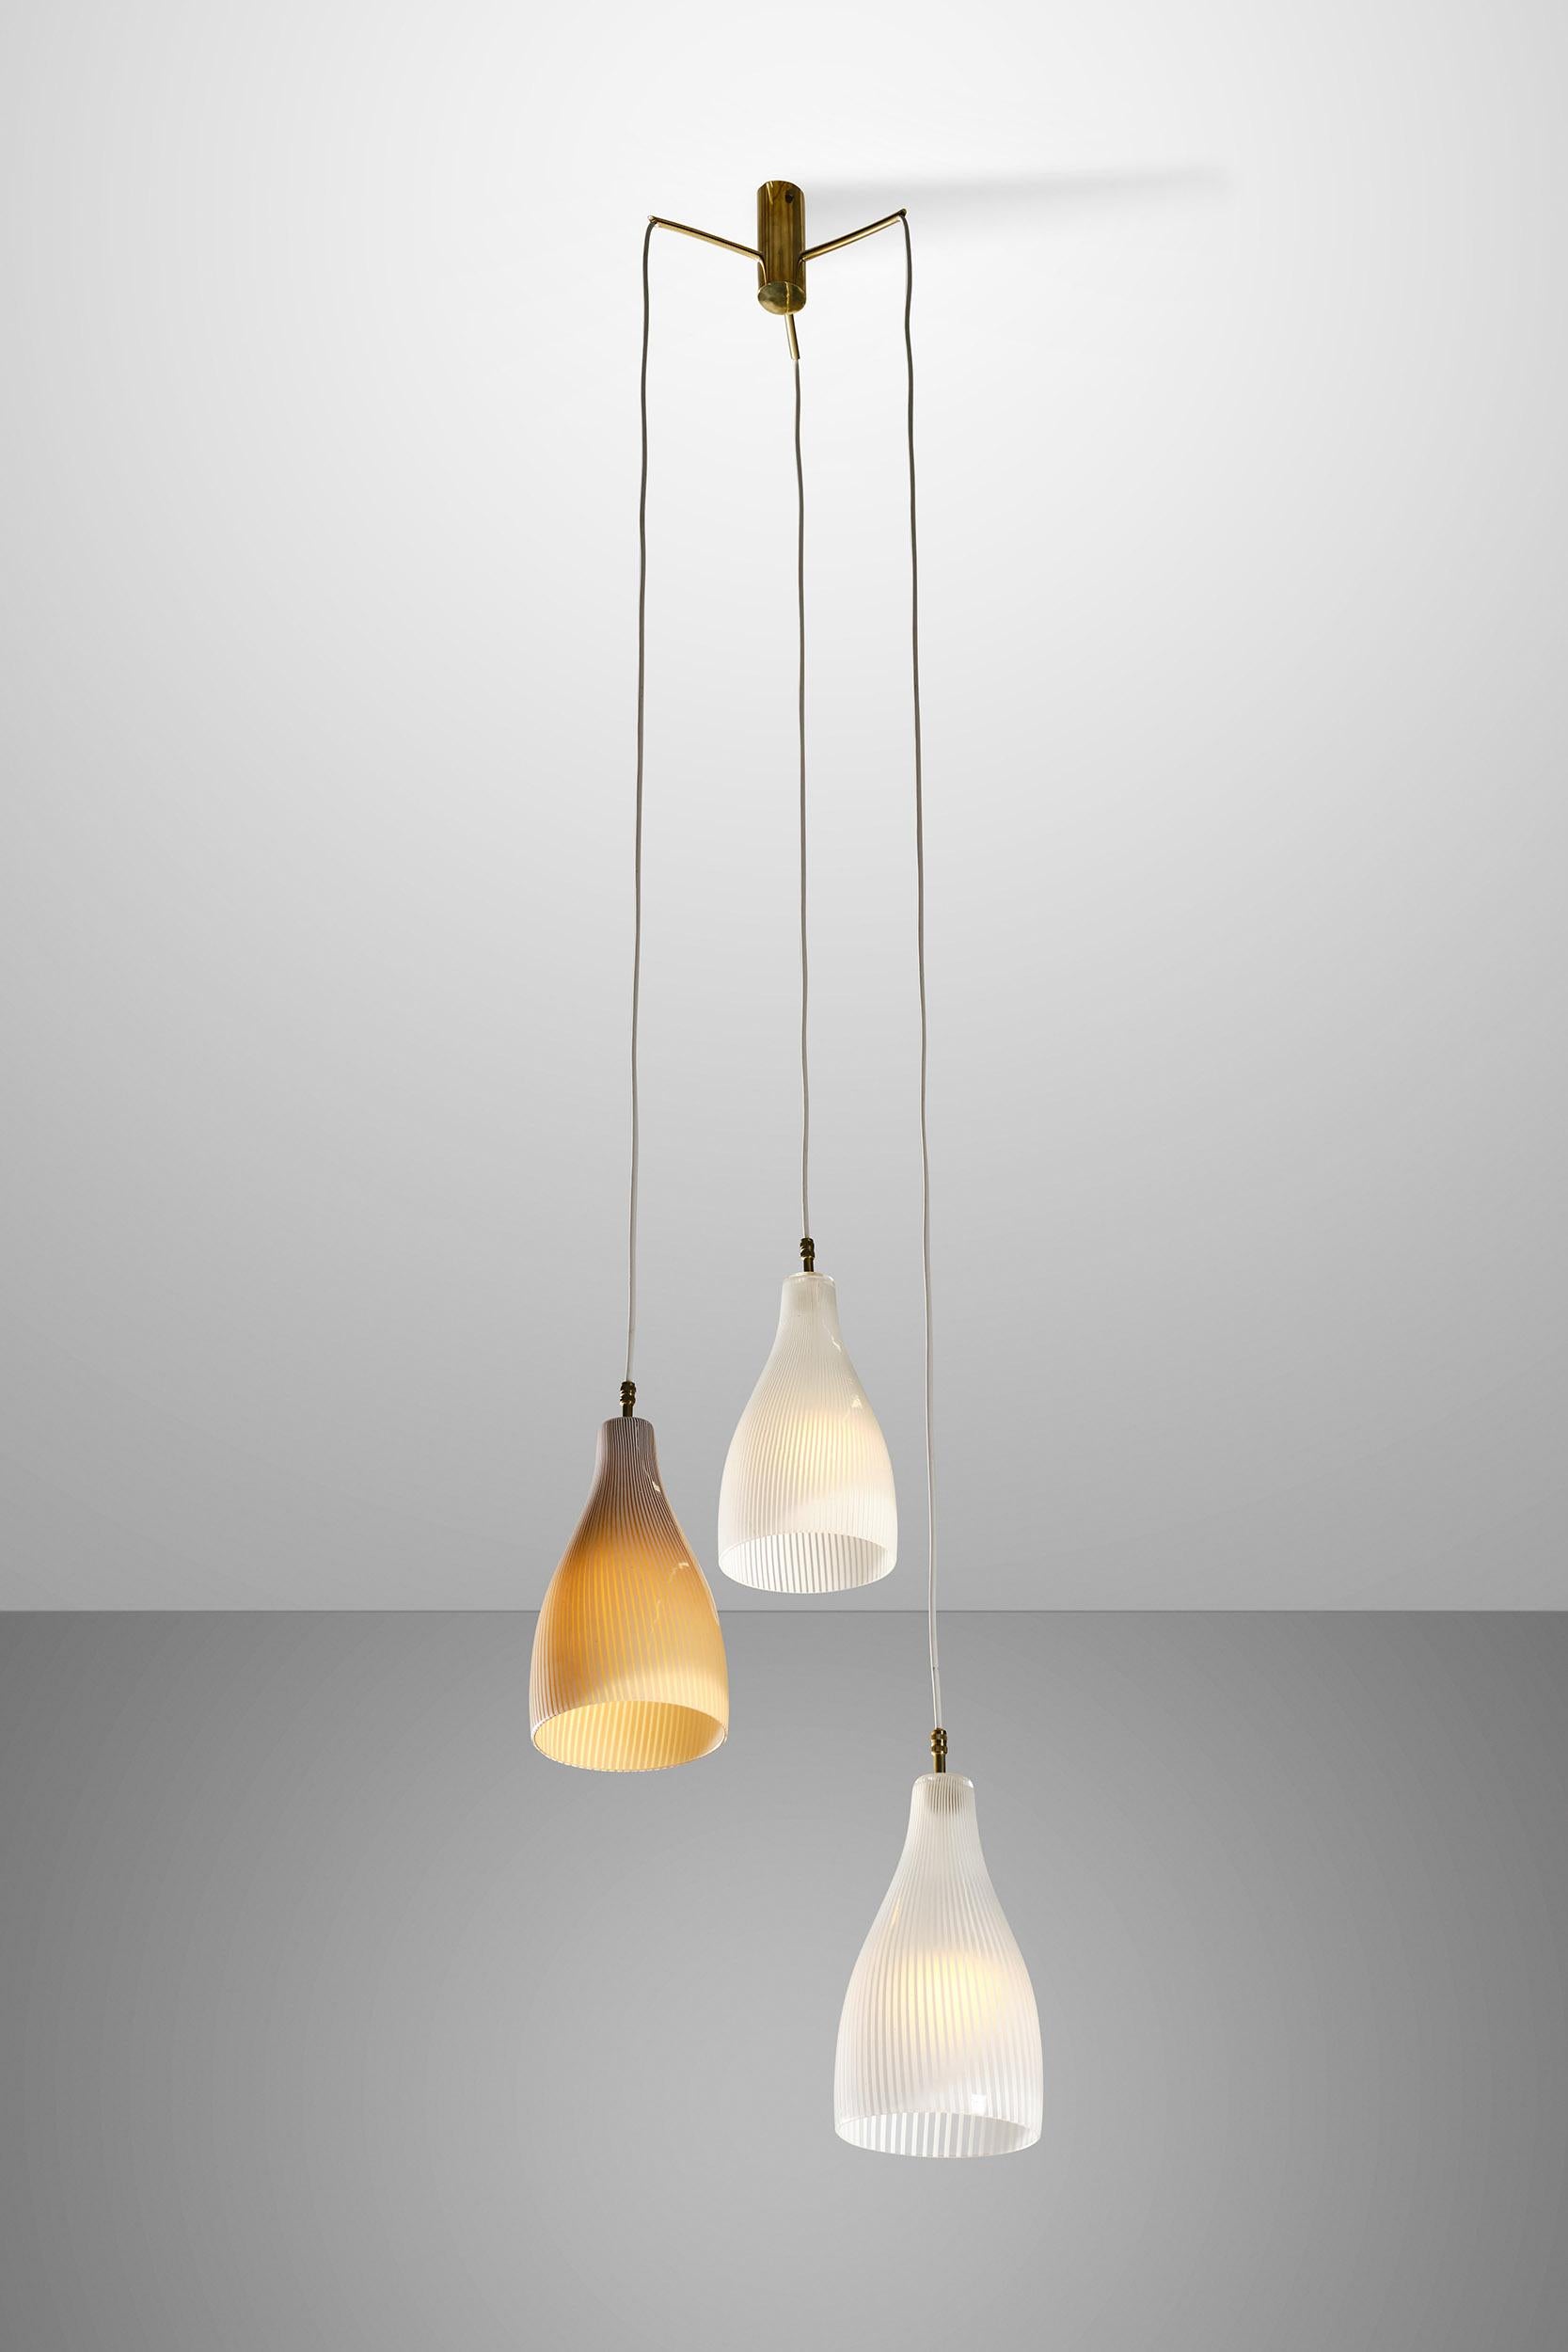 Metal Massimo Vignelli for Venini Murano Pendant Glass Lamp, 1960s For Sale